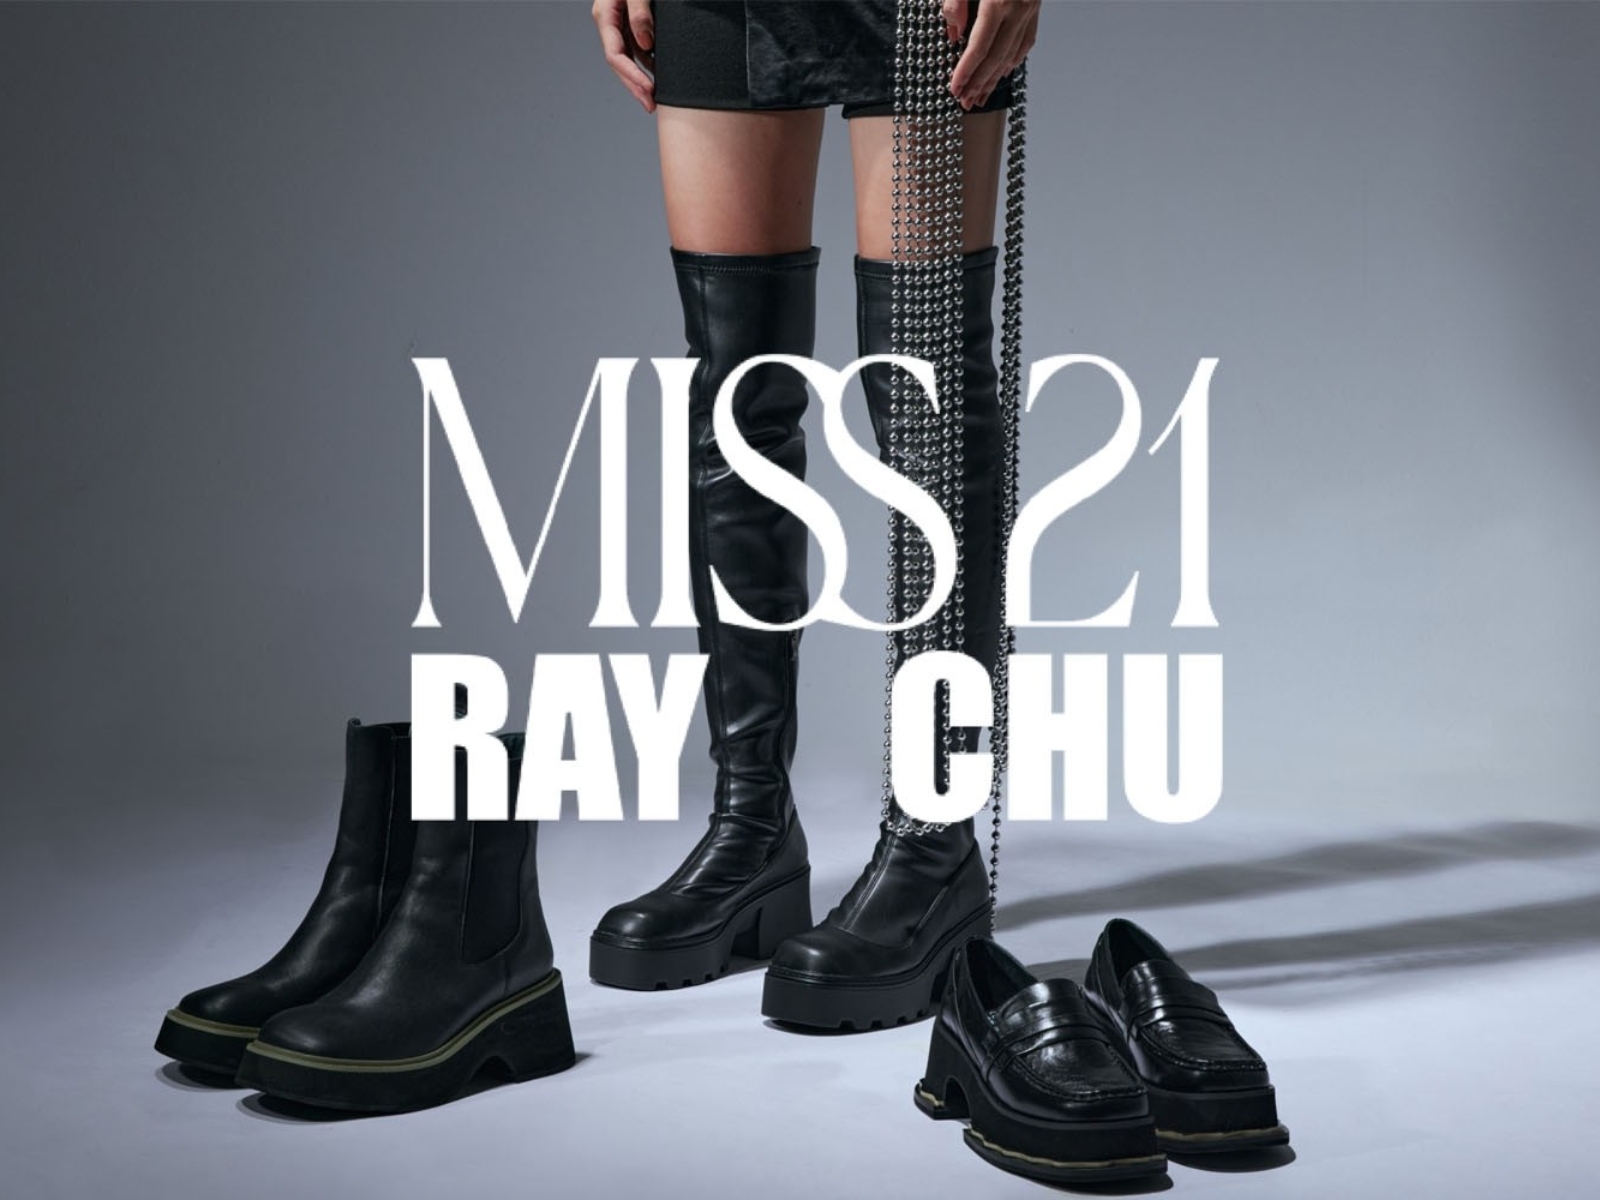 臺灣新銳設計師RAY CHU與怪美時尚女鞋品牌MISS 21首次推出聯名鞋款系列 : “I am MISS Ray”